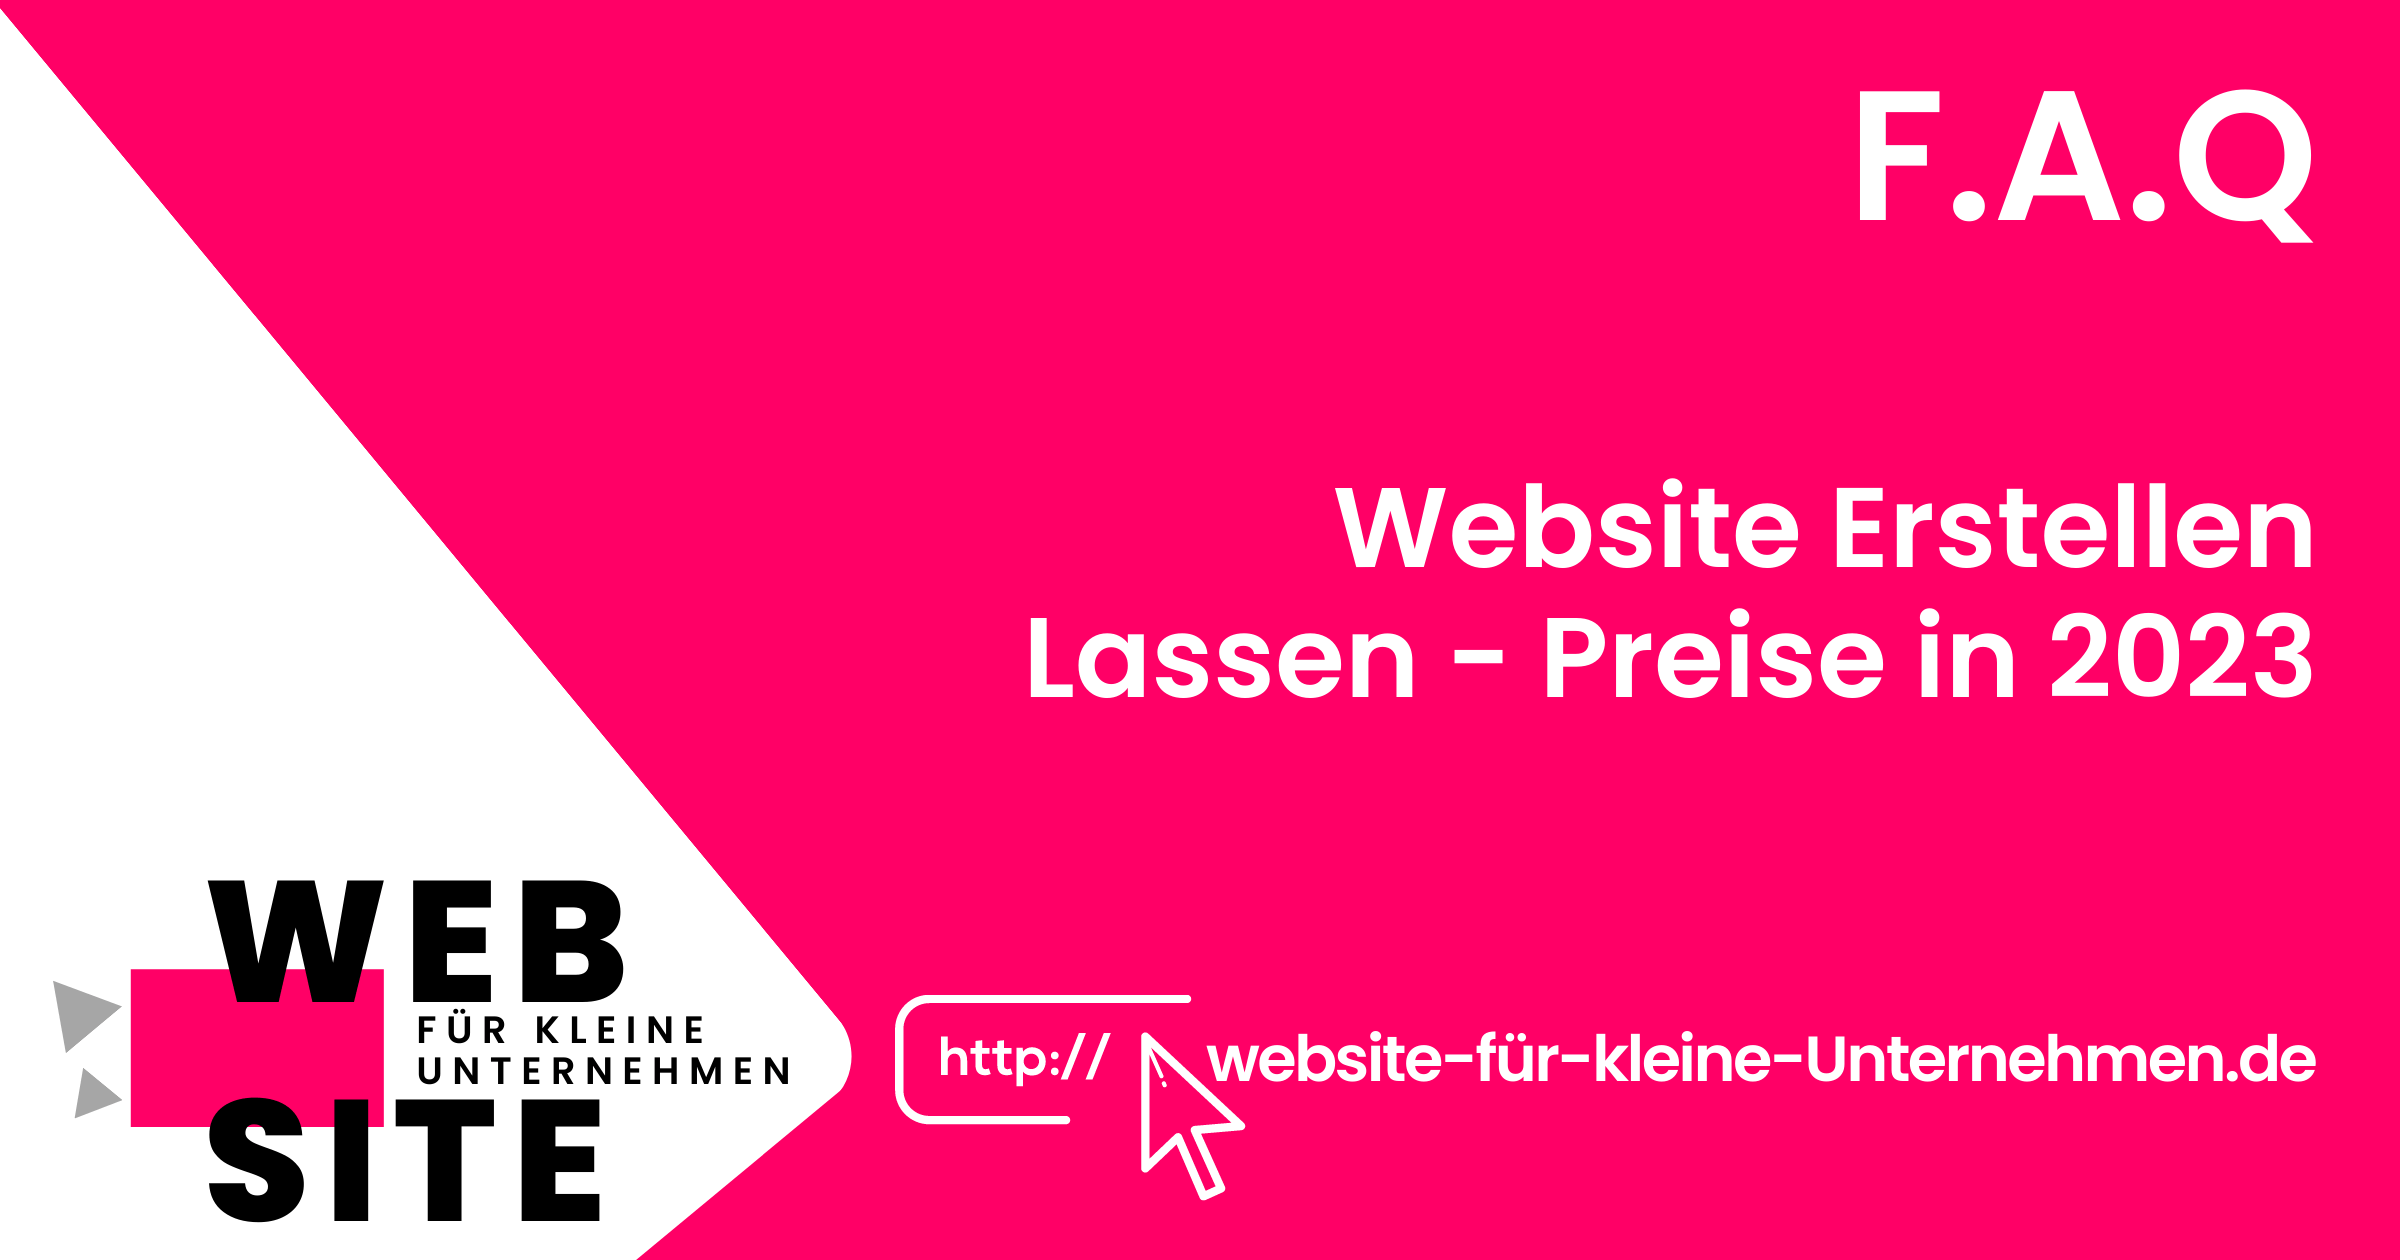 website-für-kleine-unternehmen - Website Erstellen lassen Preise - FAQ